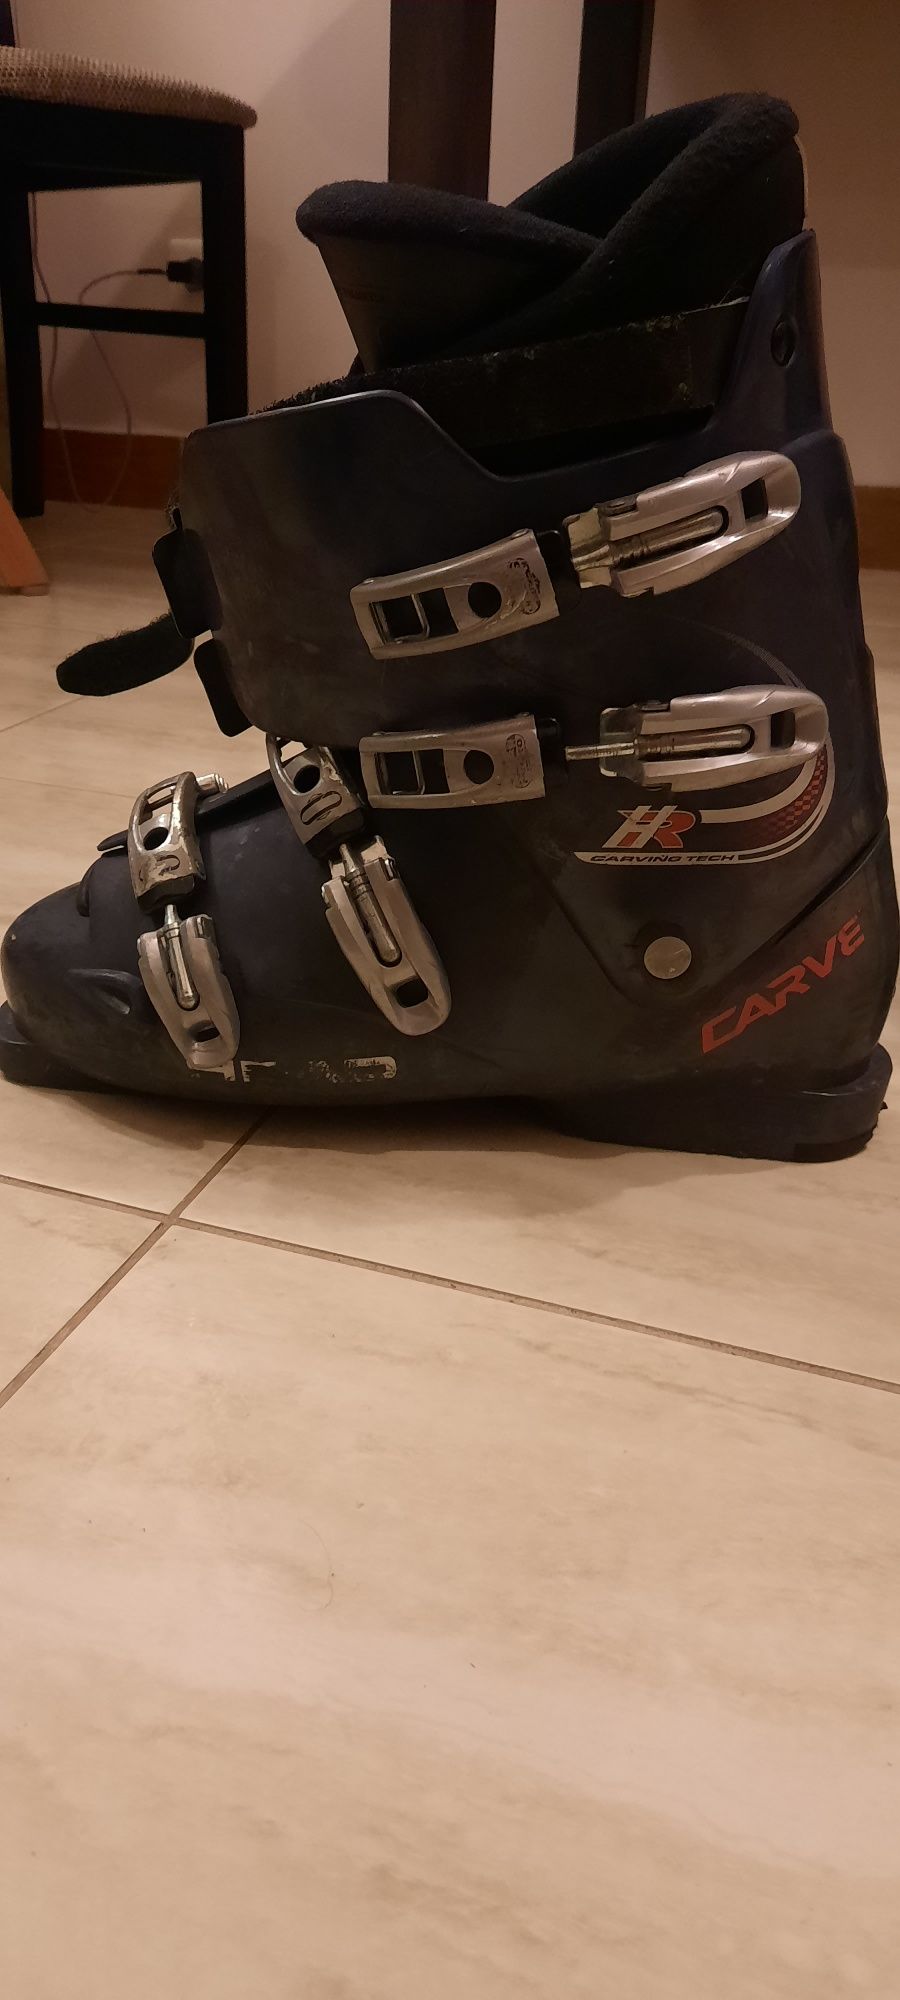 Buty narciarskie wraz z torbą